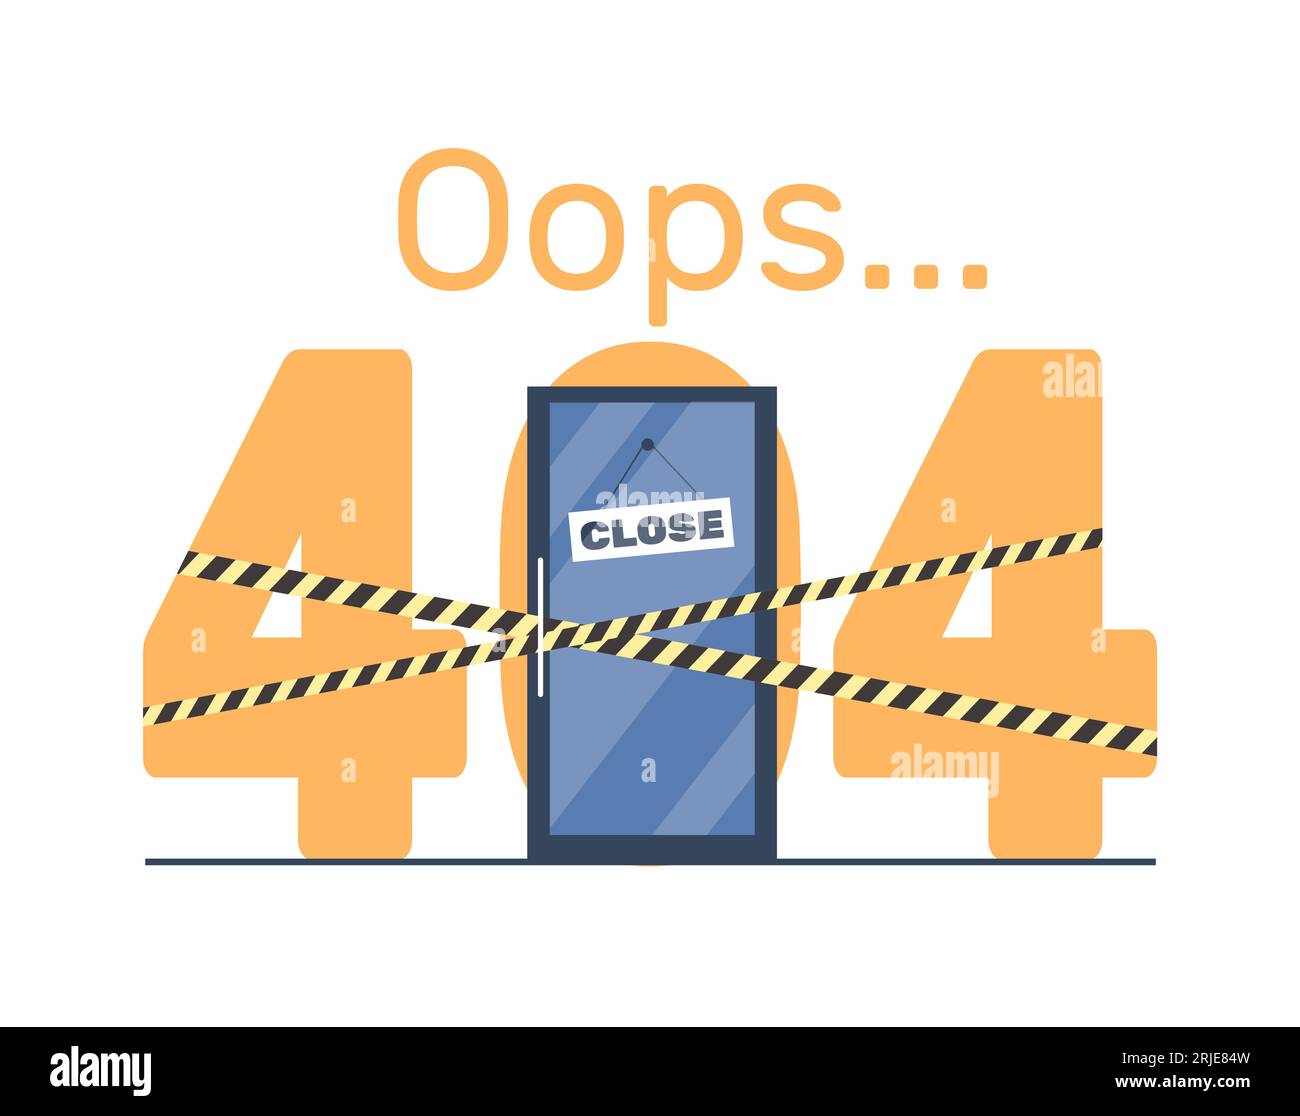 Modello di progettazione della pagina degli errori Joke 404 con sportello chiuso e nastri a barricata. Progettazione di banner Web. Errore pagina Web. Problemi con Internet, sito web Illustrazione Vettoriale